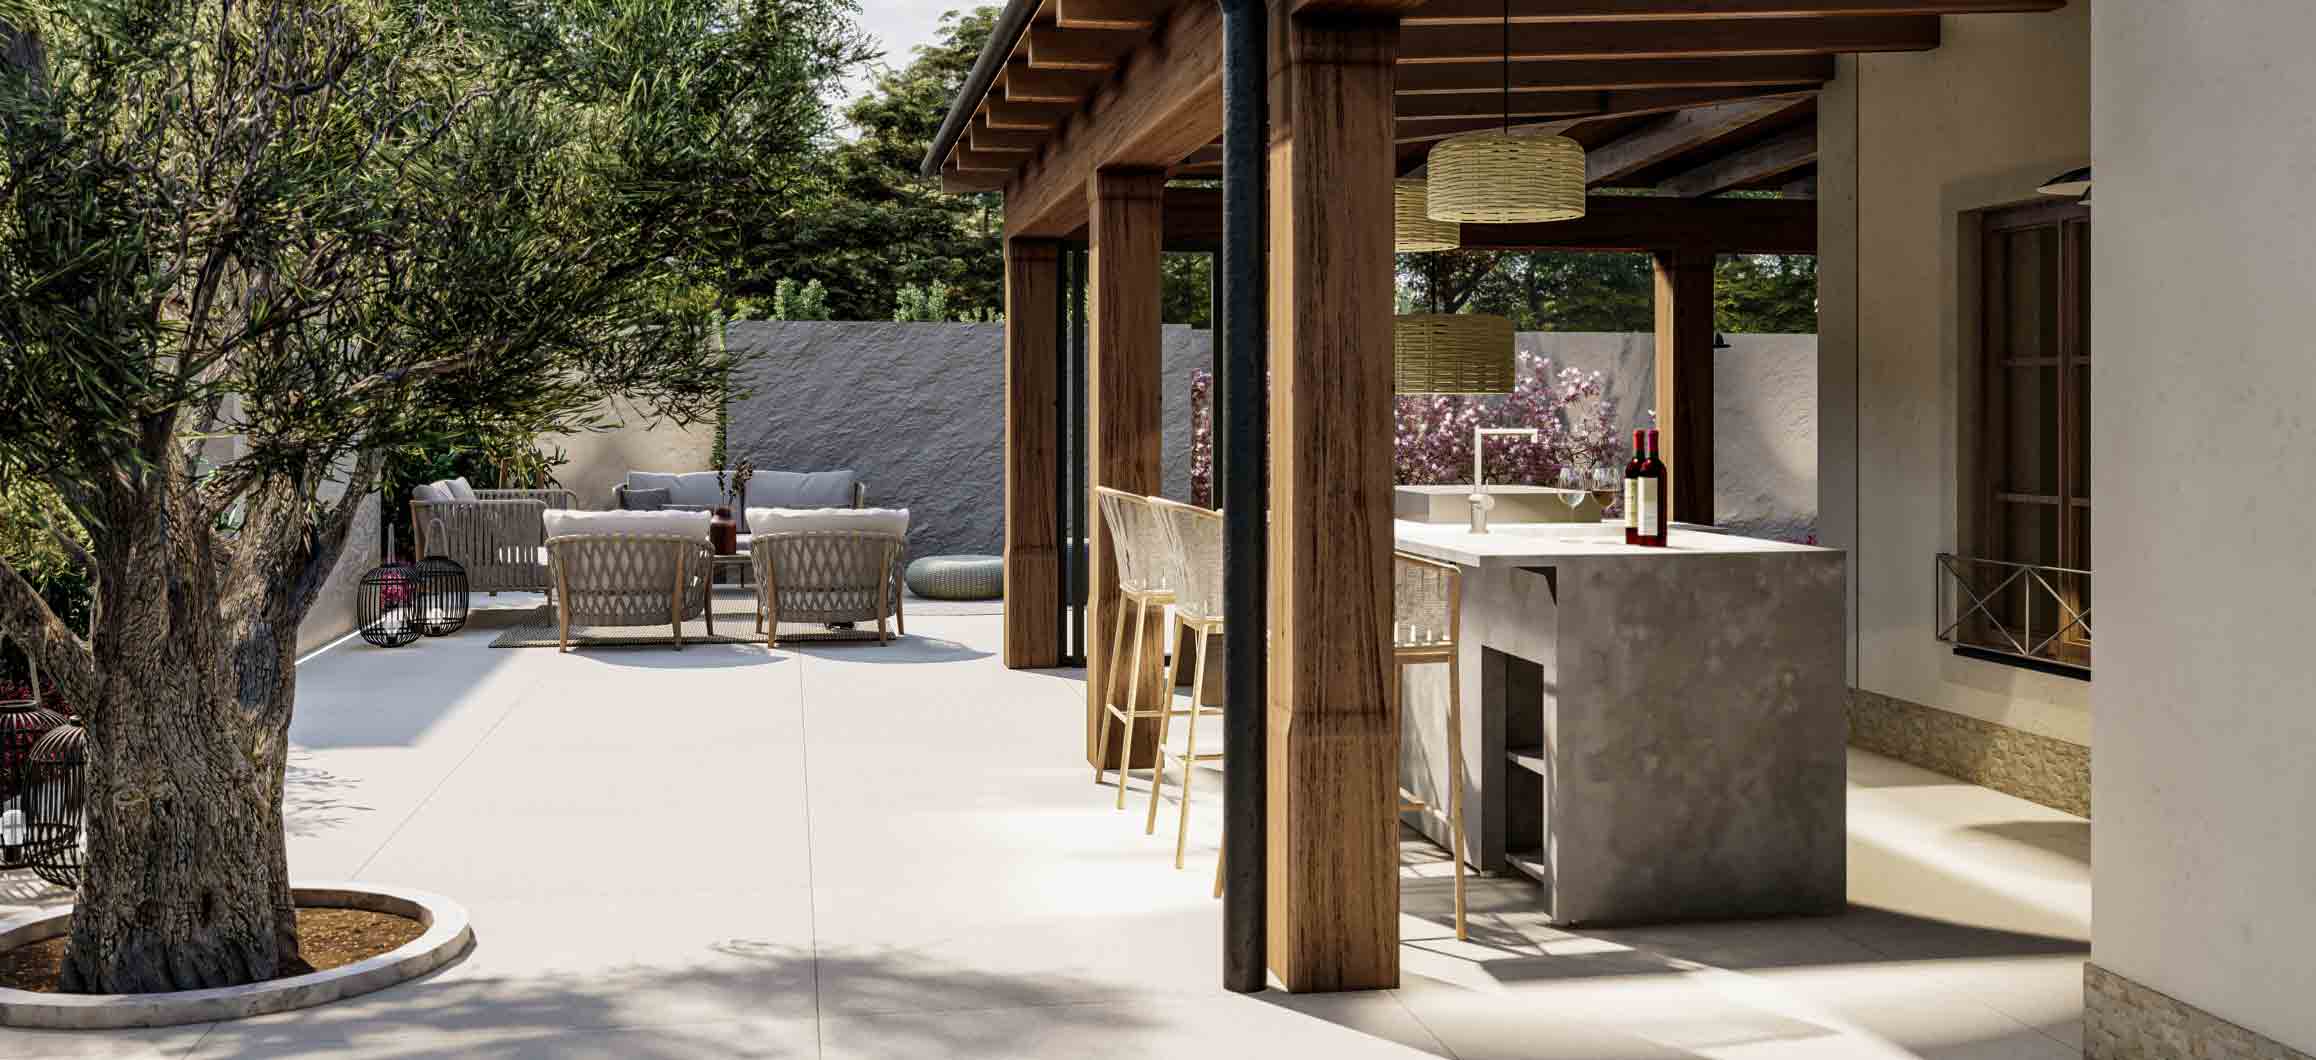 3D-Visualisierung Garten mit überdachter Outdoorküche und stilvollem Lounge-Bereich